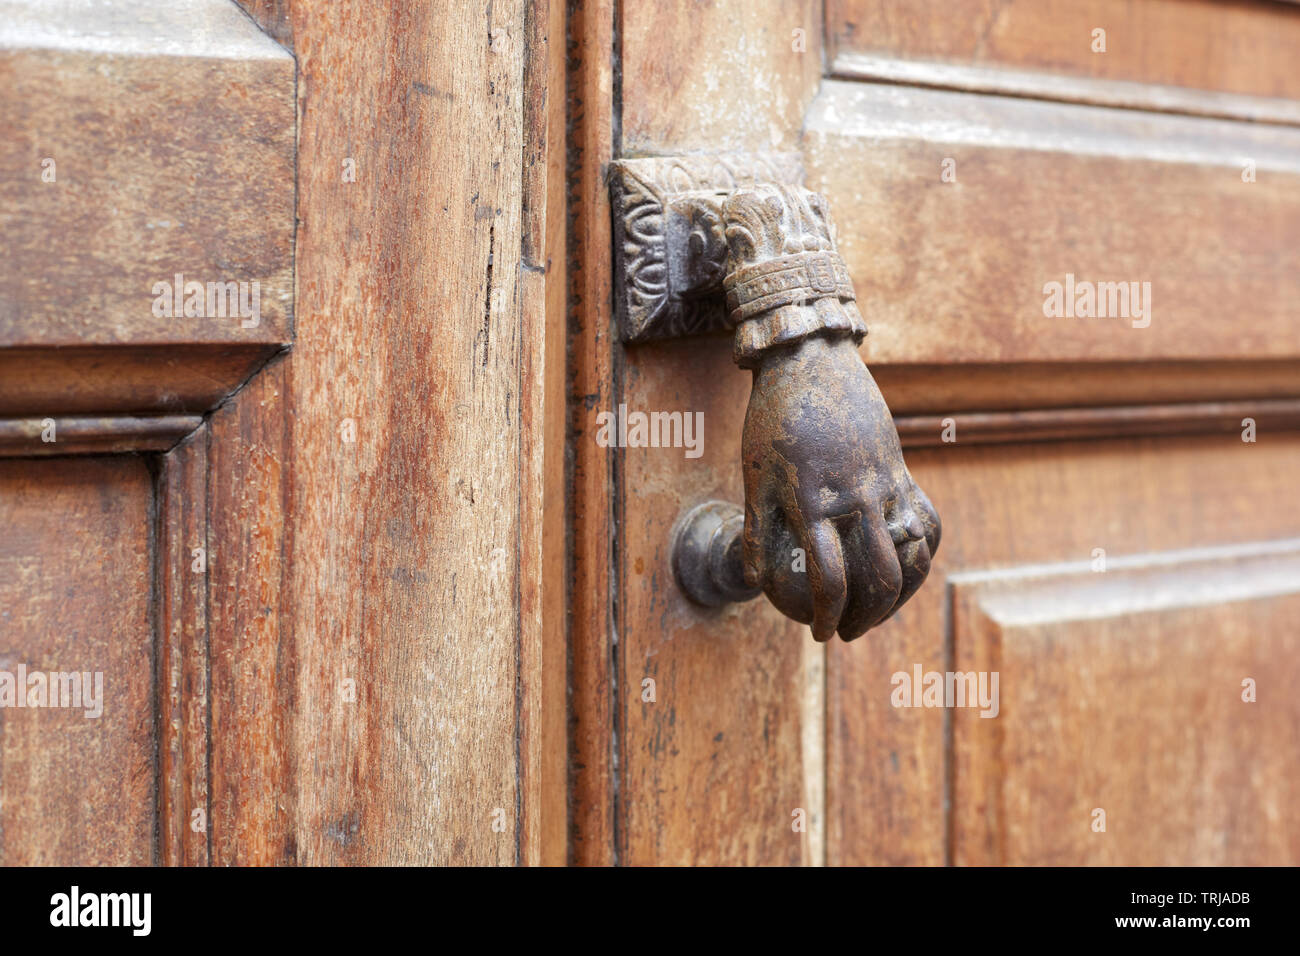 Old door knocker in shape of hand and wooden door background Stock Photo